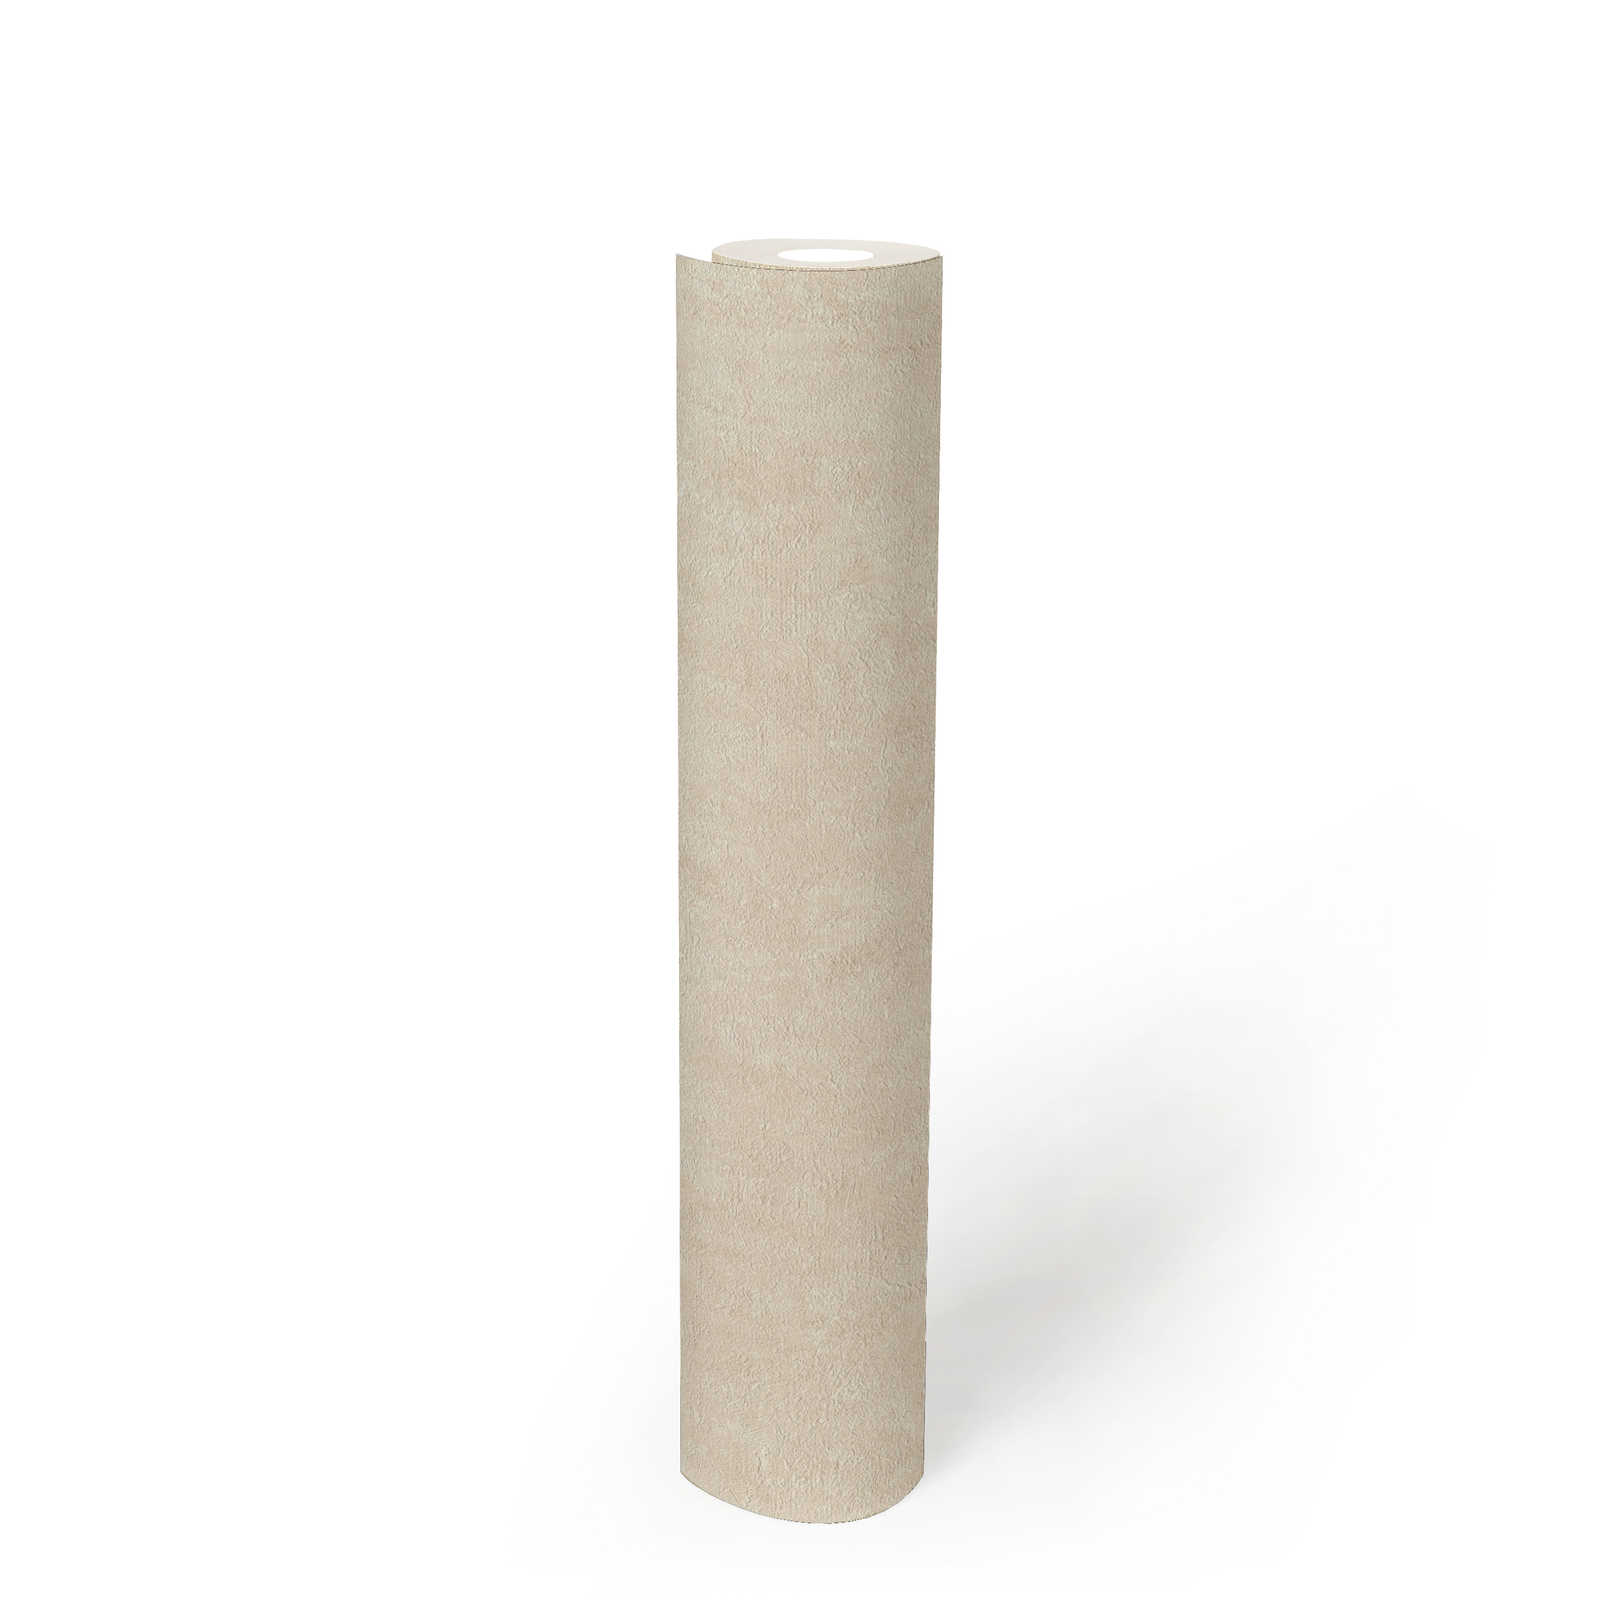             Textured wallpaper non-woven mottled ivory - white, grey, cream
        